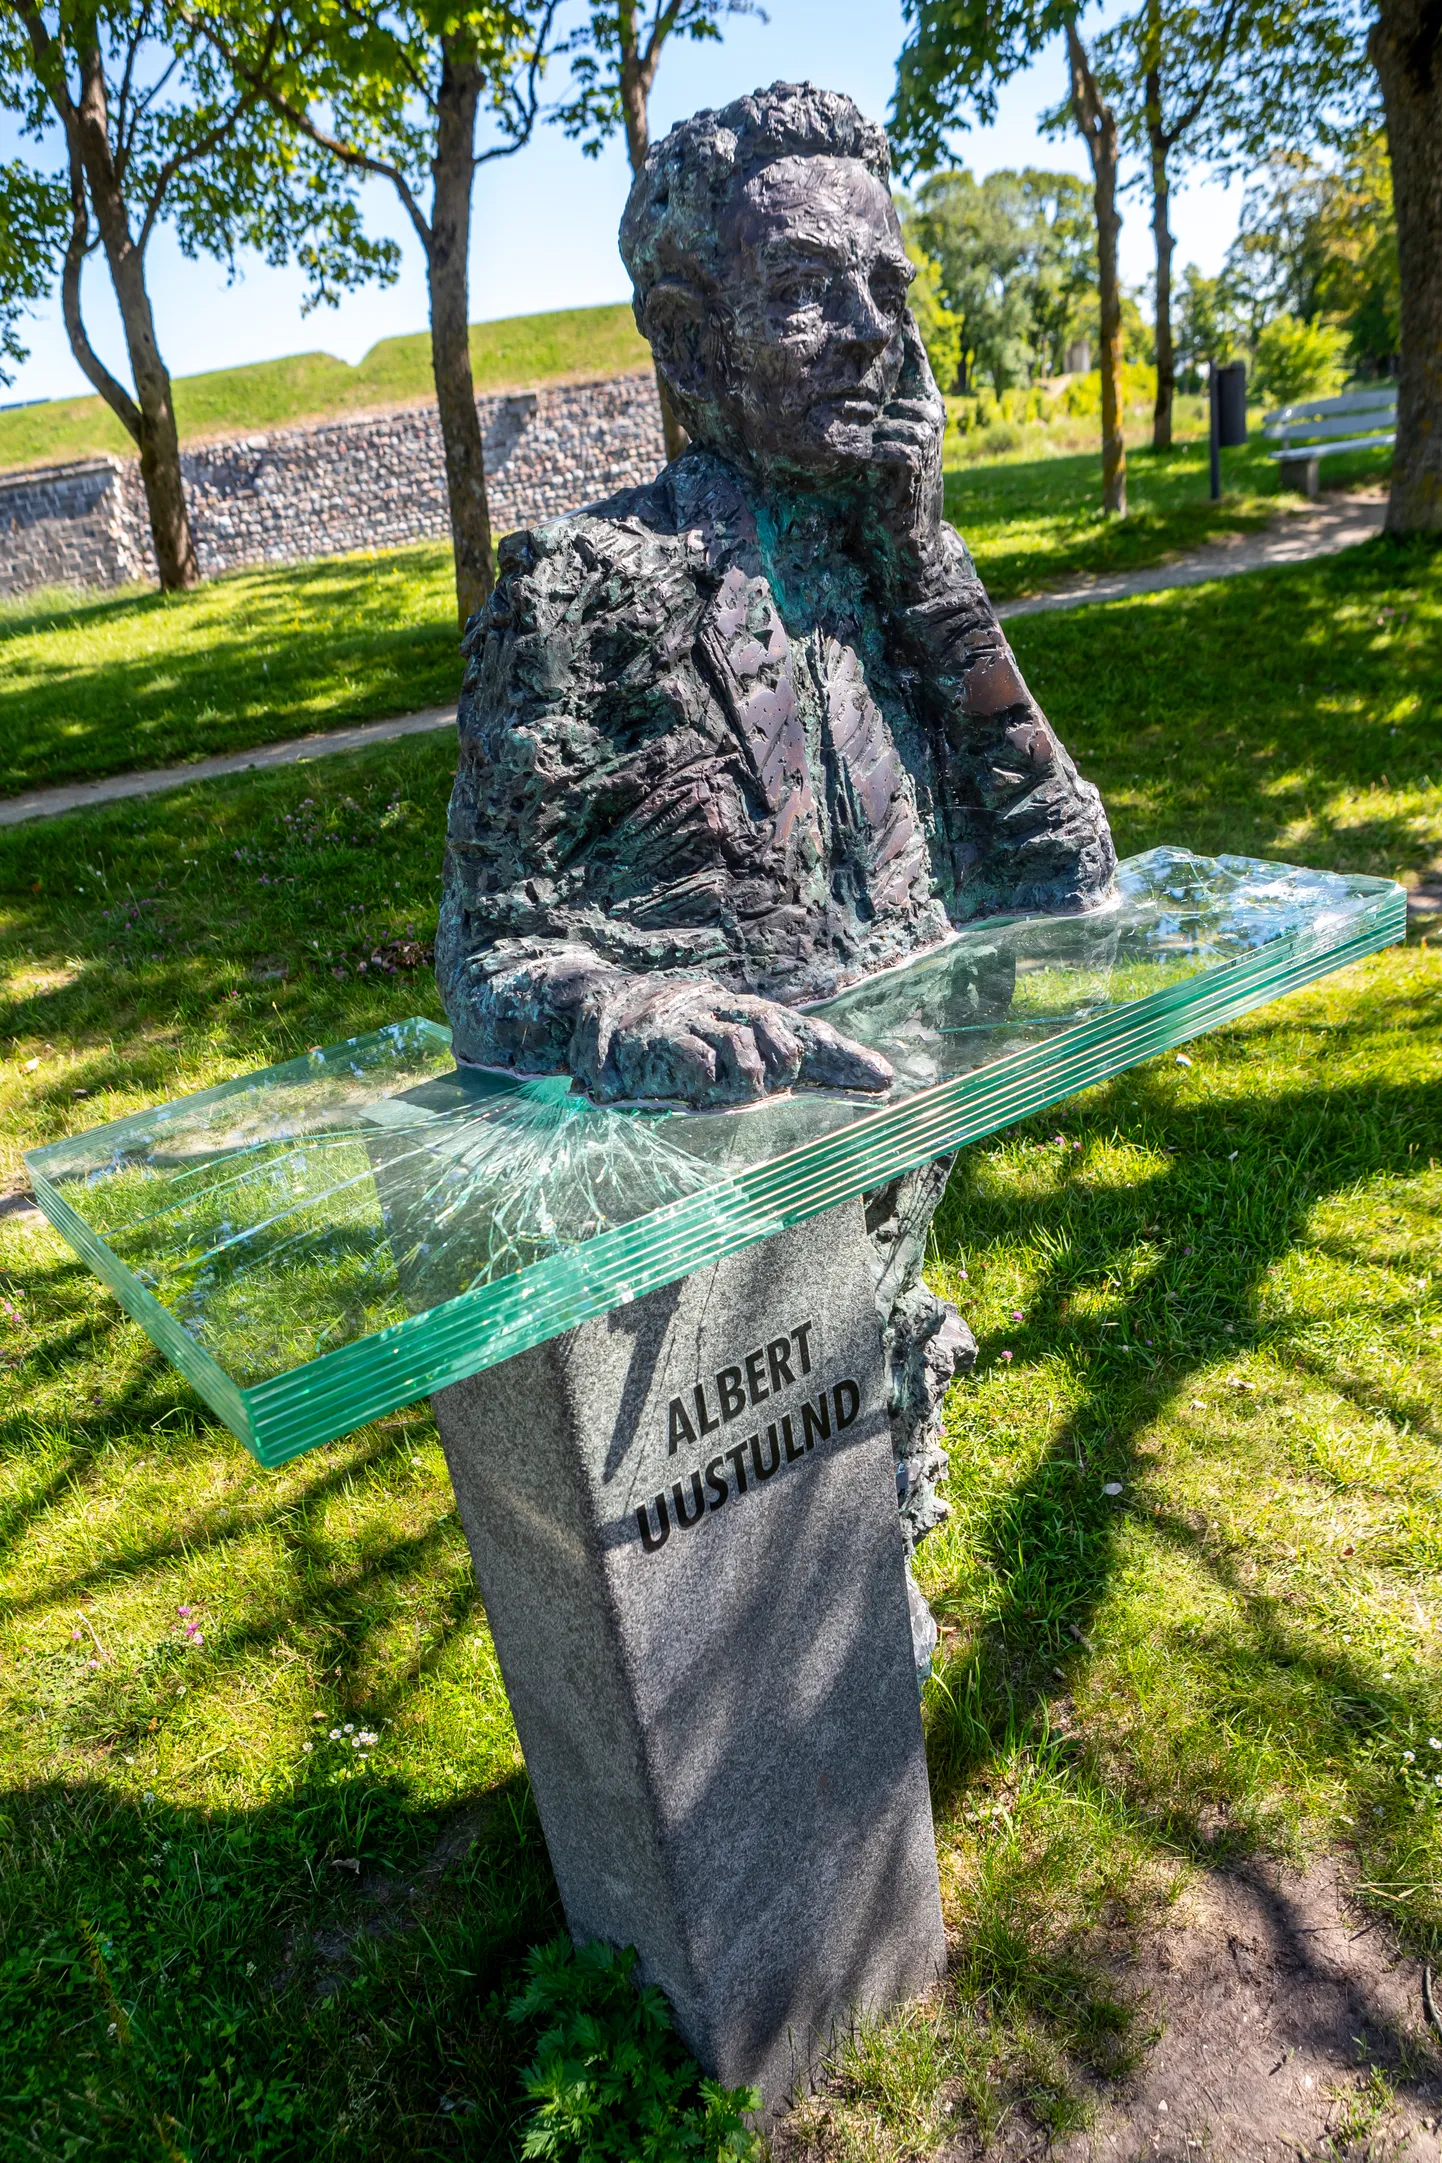 Albert Uustulndi lõhutud monument.